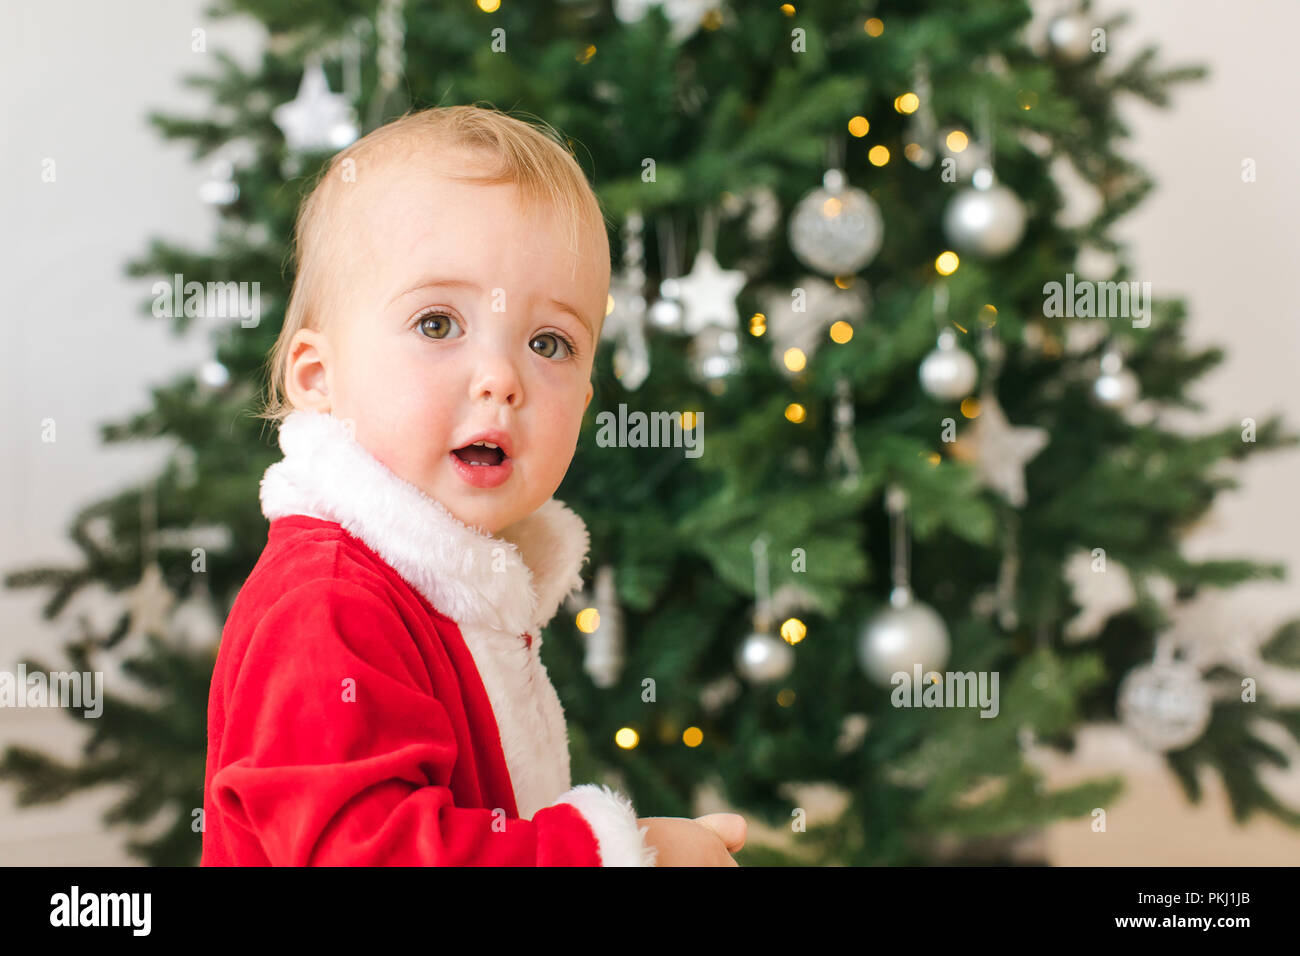 Little Boy in Santa Kostüm in der Nähe von Weihnachten Baum Stockfoto